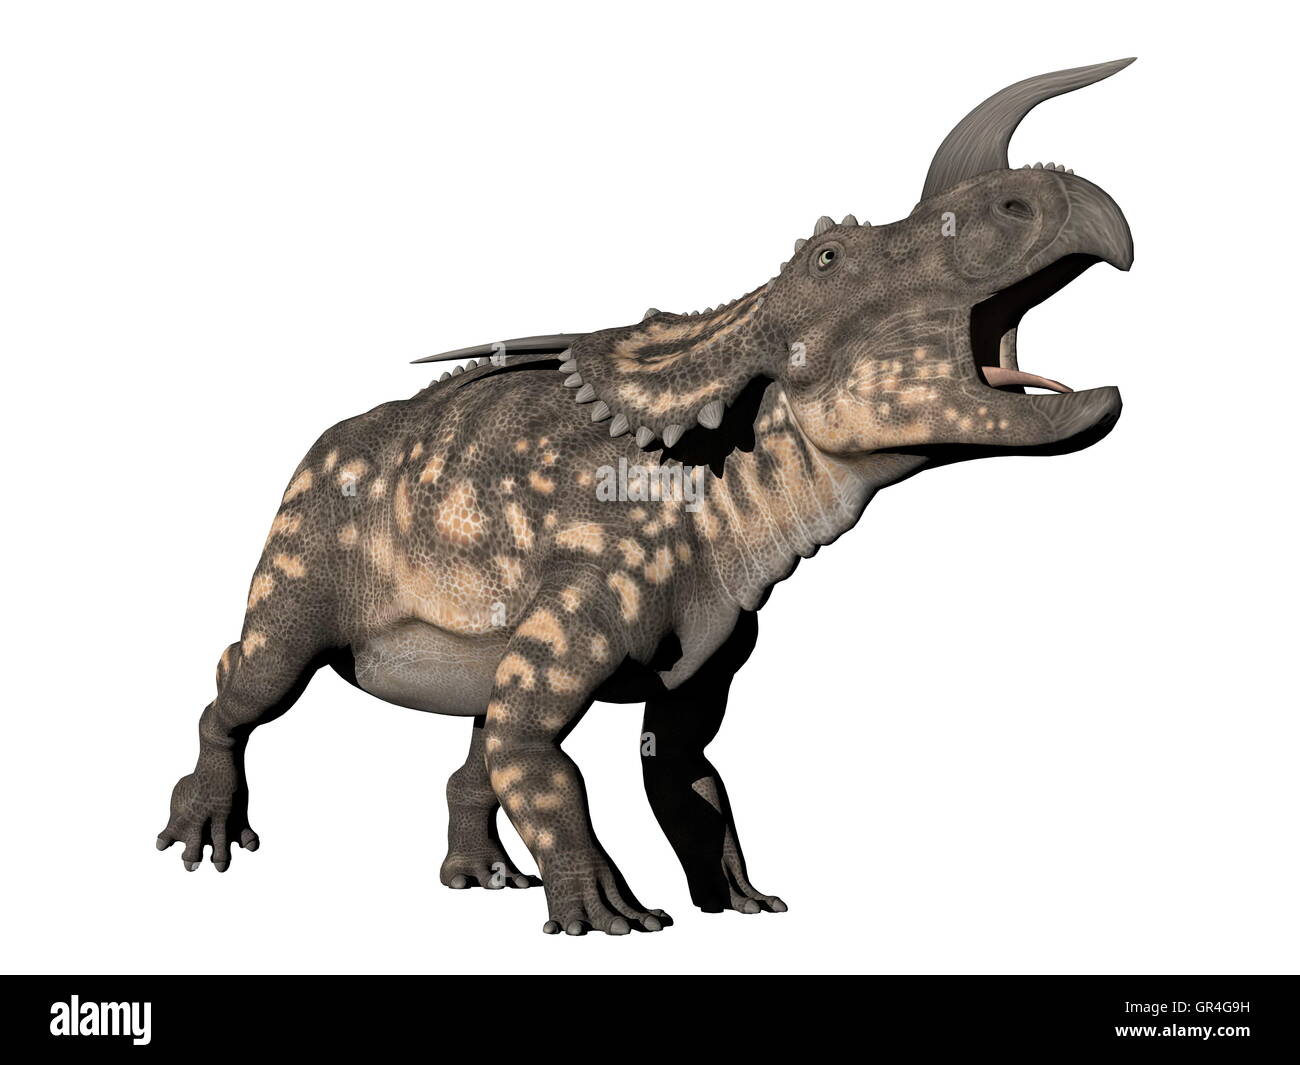 Einiosaurus dinosaur - 3D render Stock Photo